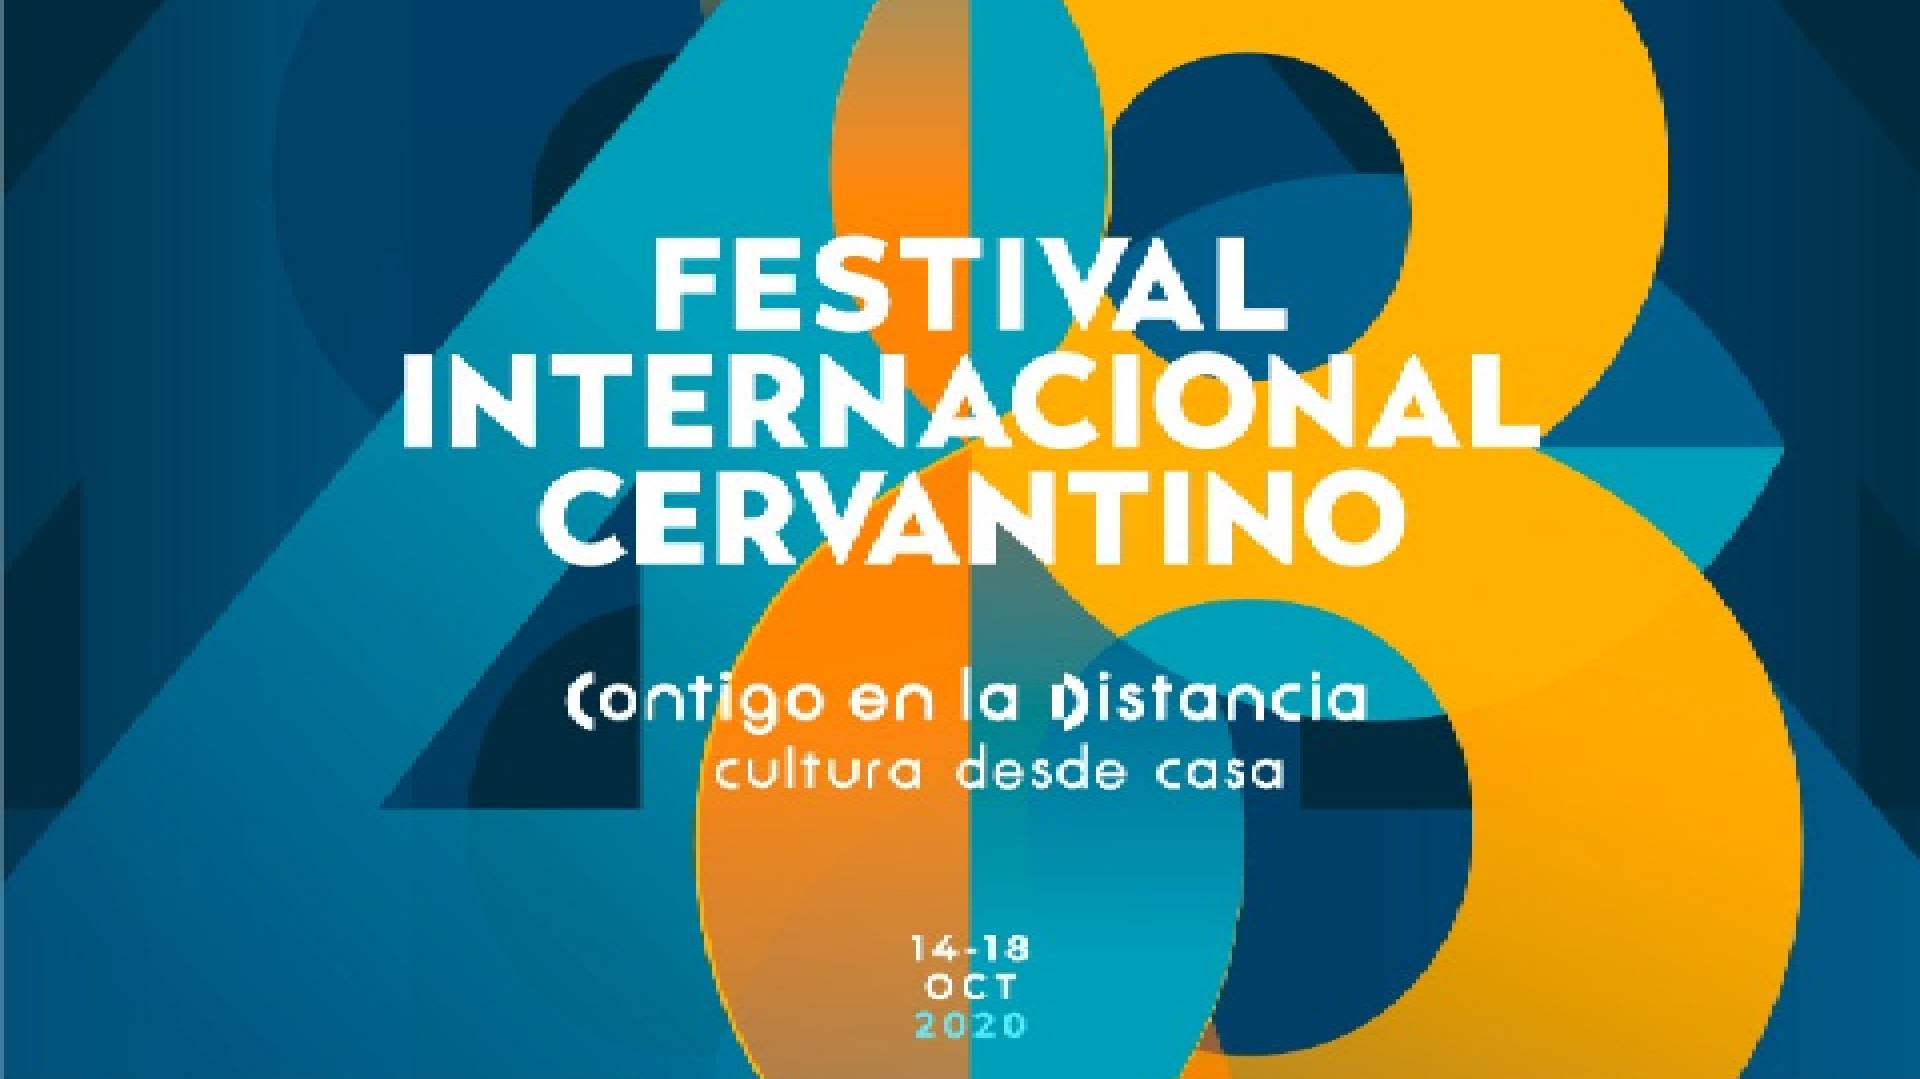 Este fue el logotipo de la edición 48 del Festival Internacional Cervantino (Foto: Instagram@cervantino)